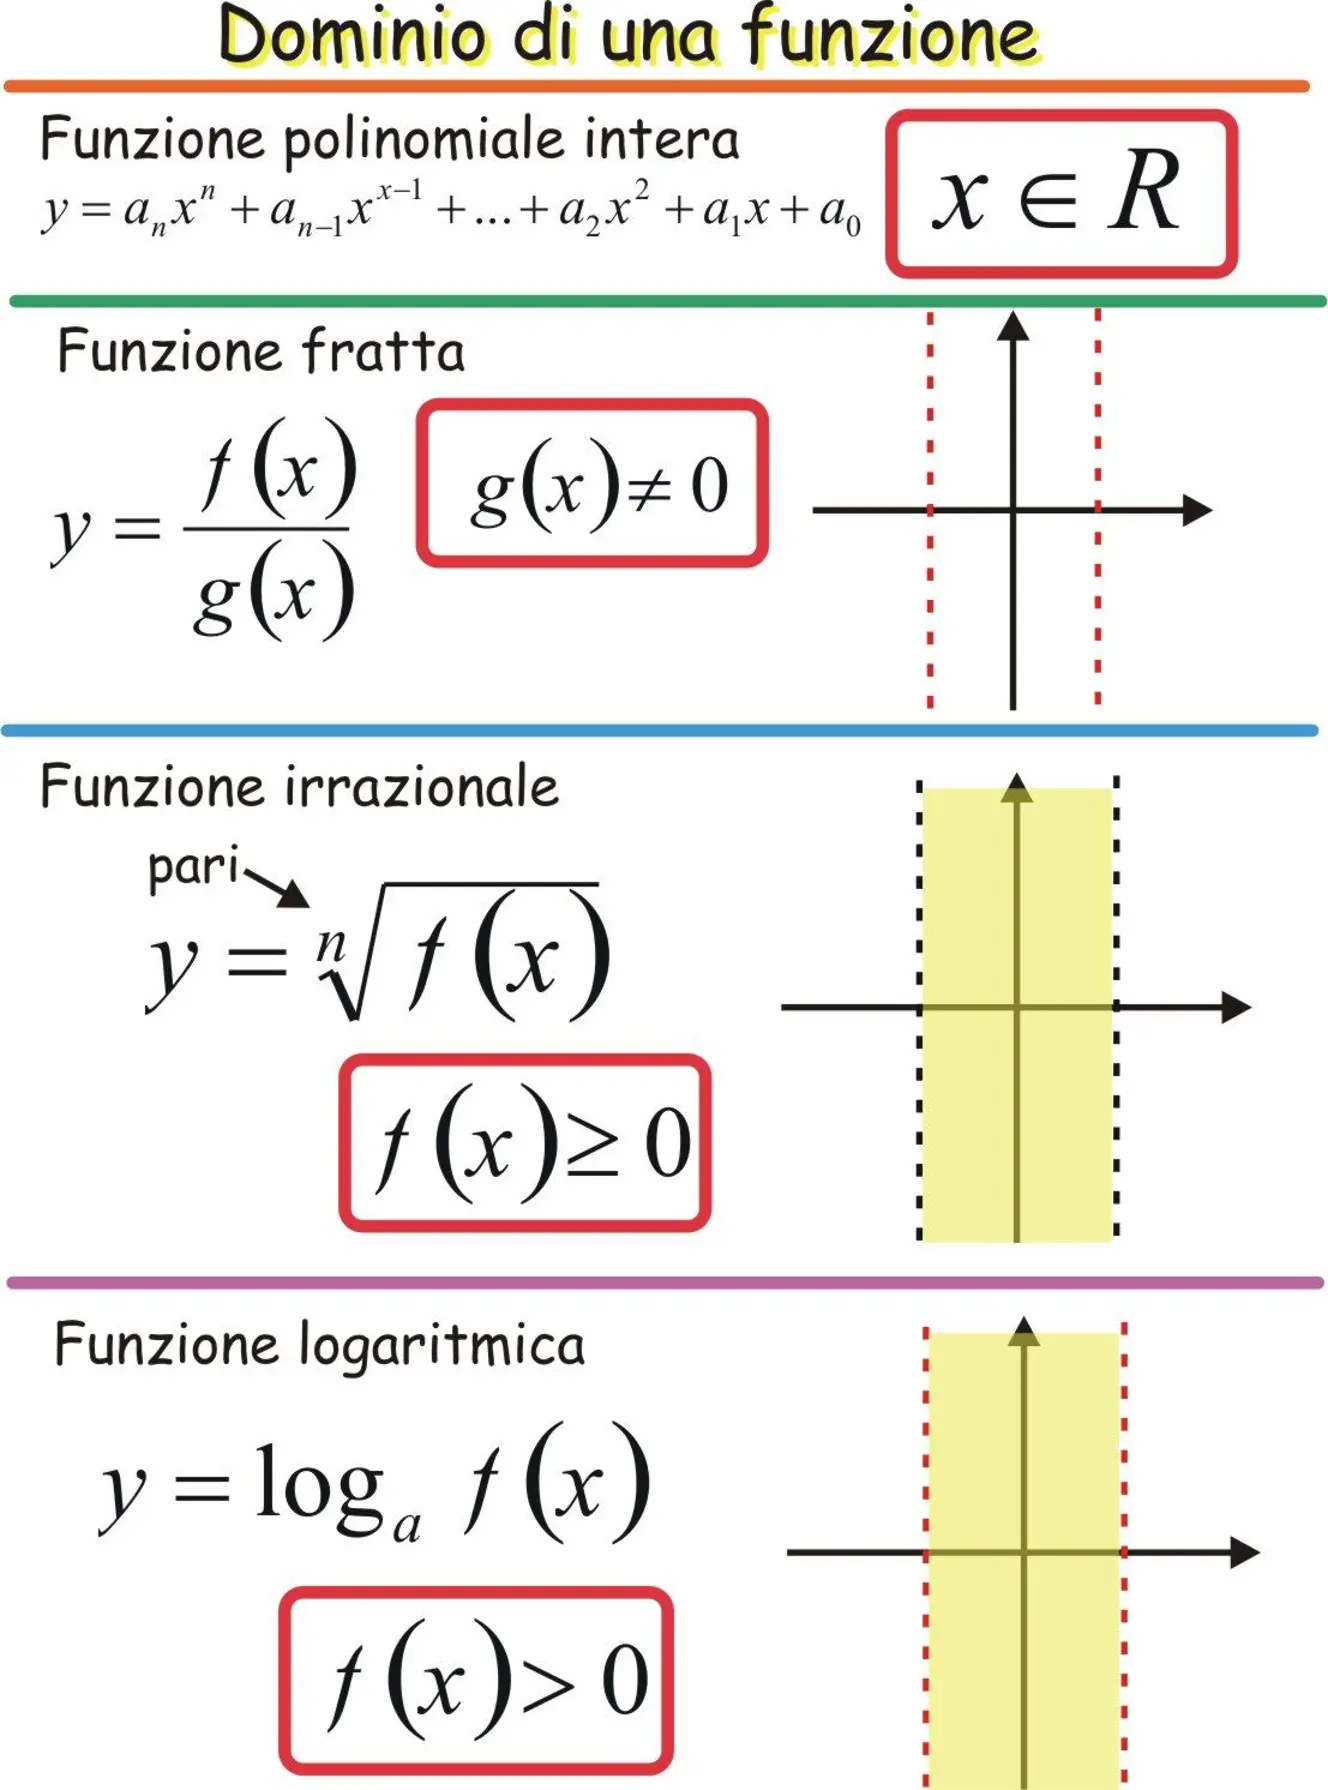 Esempio 4: Funzione logaritmica